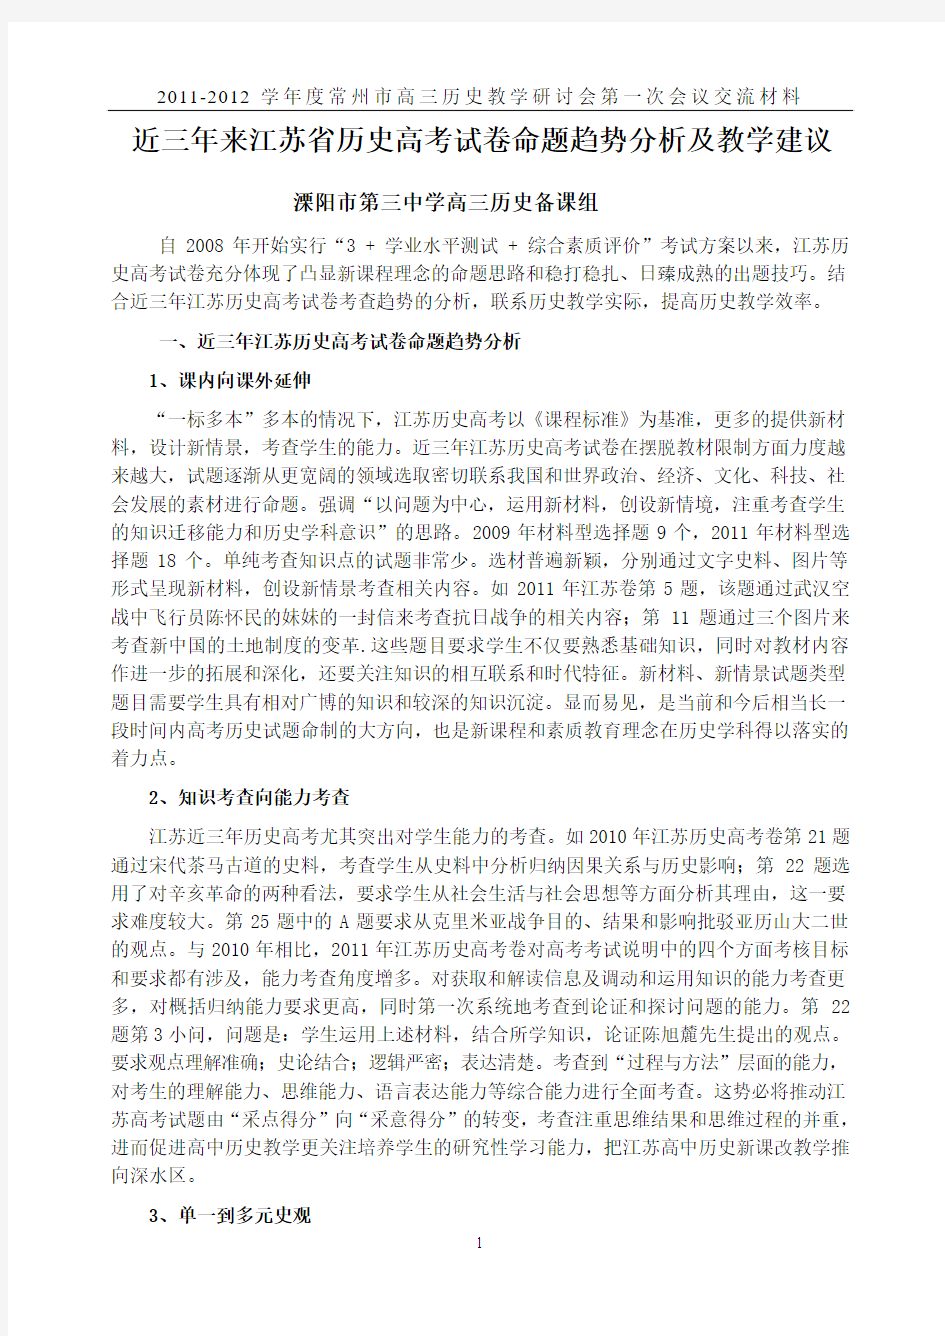 近三年来江苏省历史高考试卷命题趋势分析及教学建议